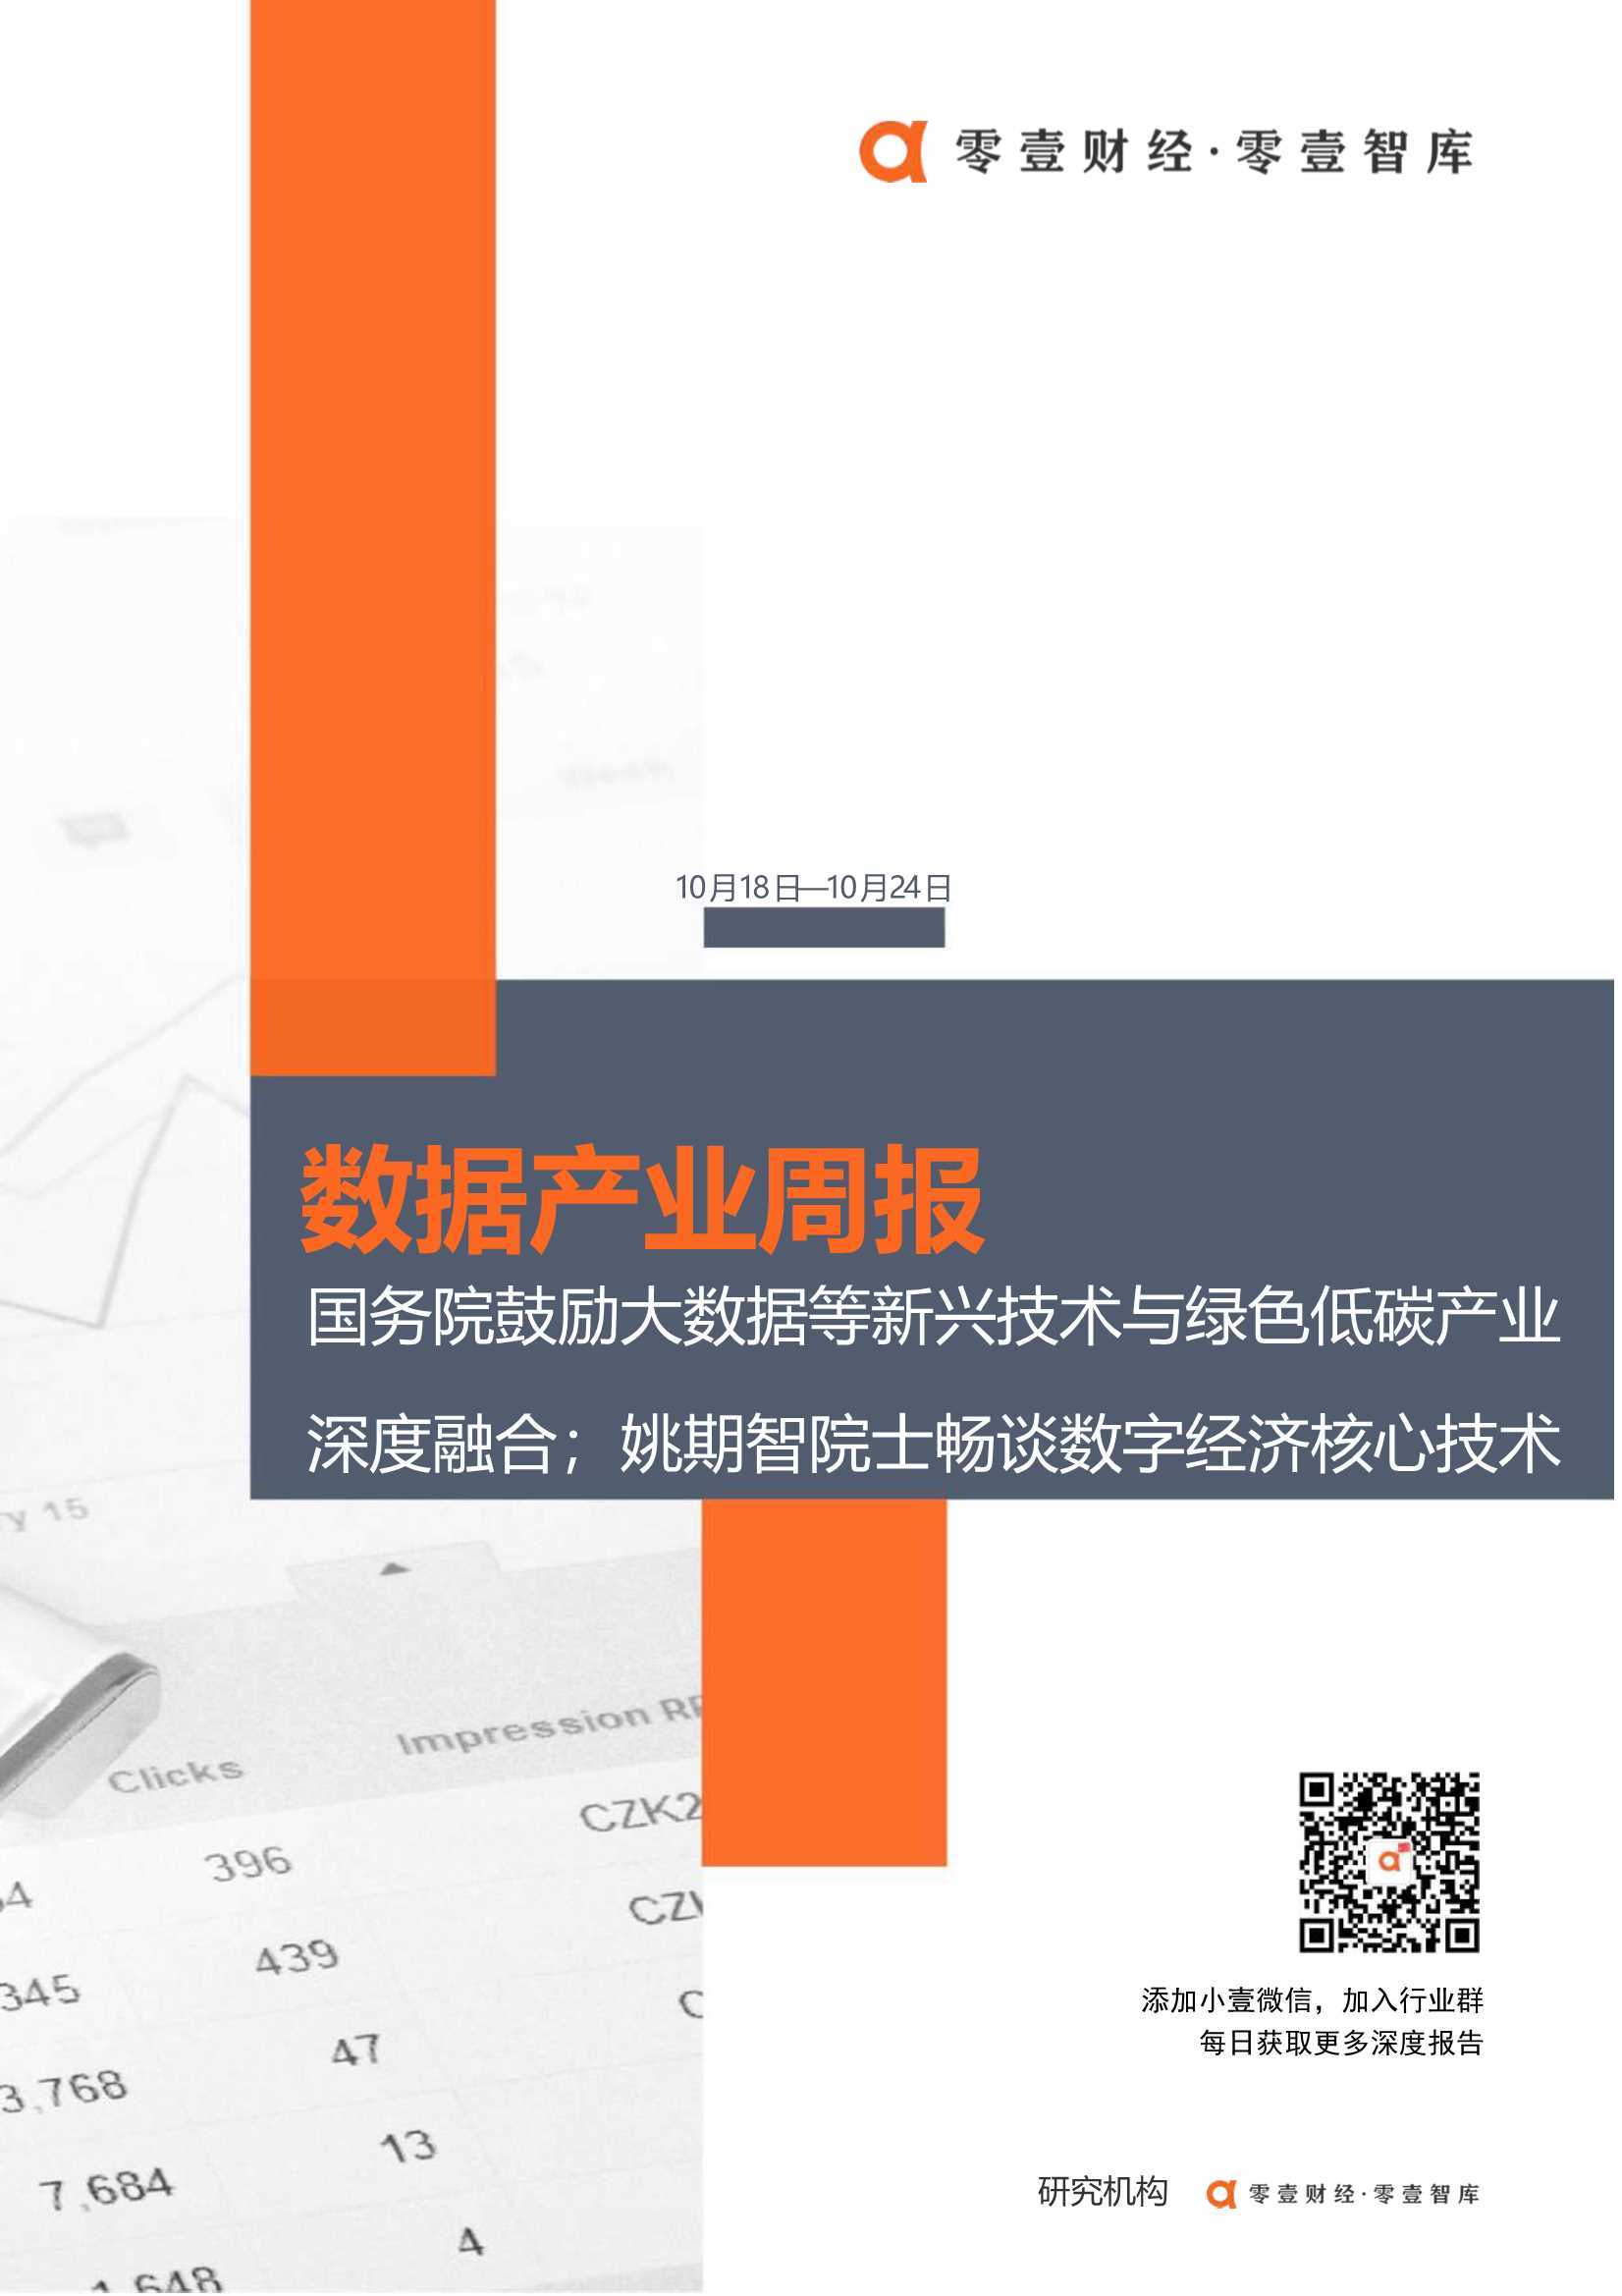 零壹智库-数据产业周报(10.18日-10.24日)：国务院鼓励大数据等新兴技术与绿色低碳产业深度融合；上海将建数字交易所-2021.10-10页